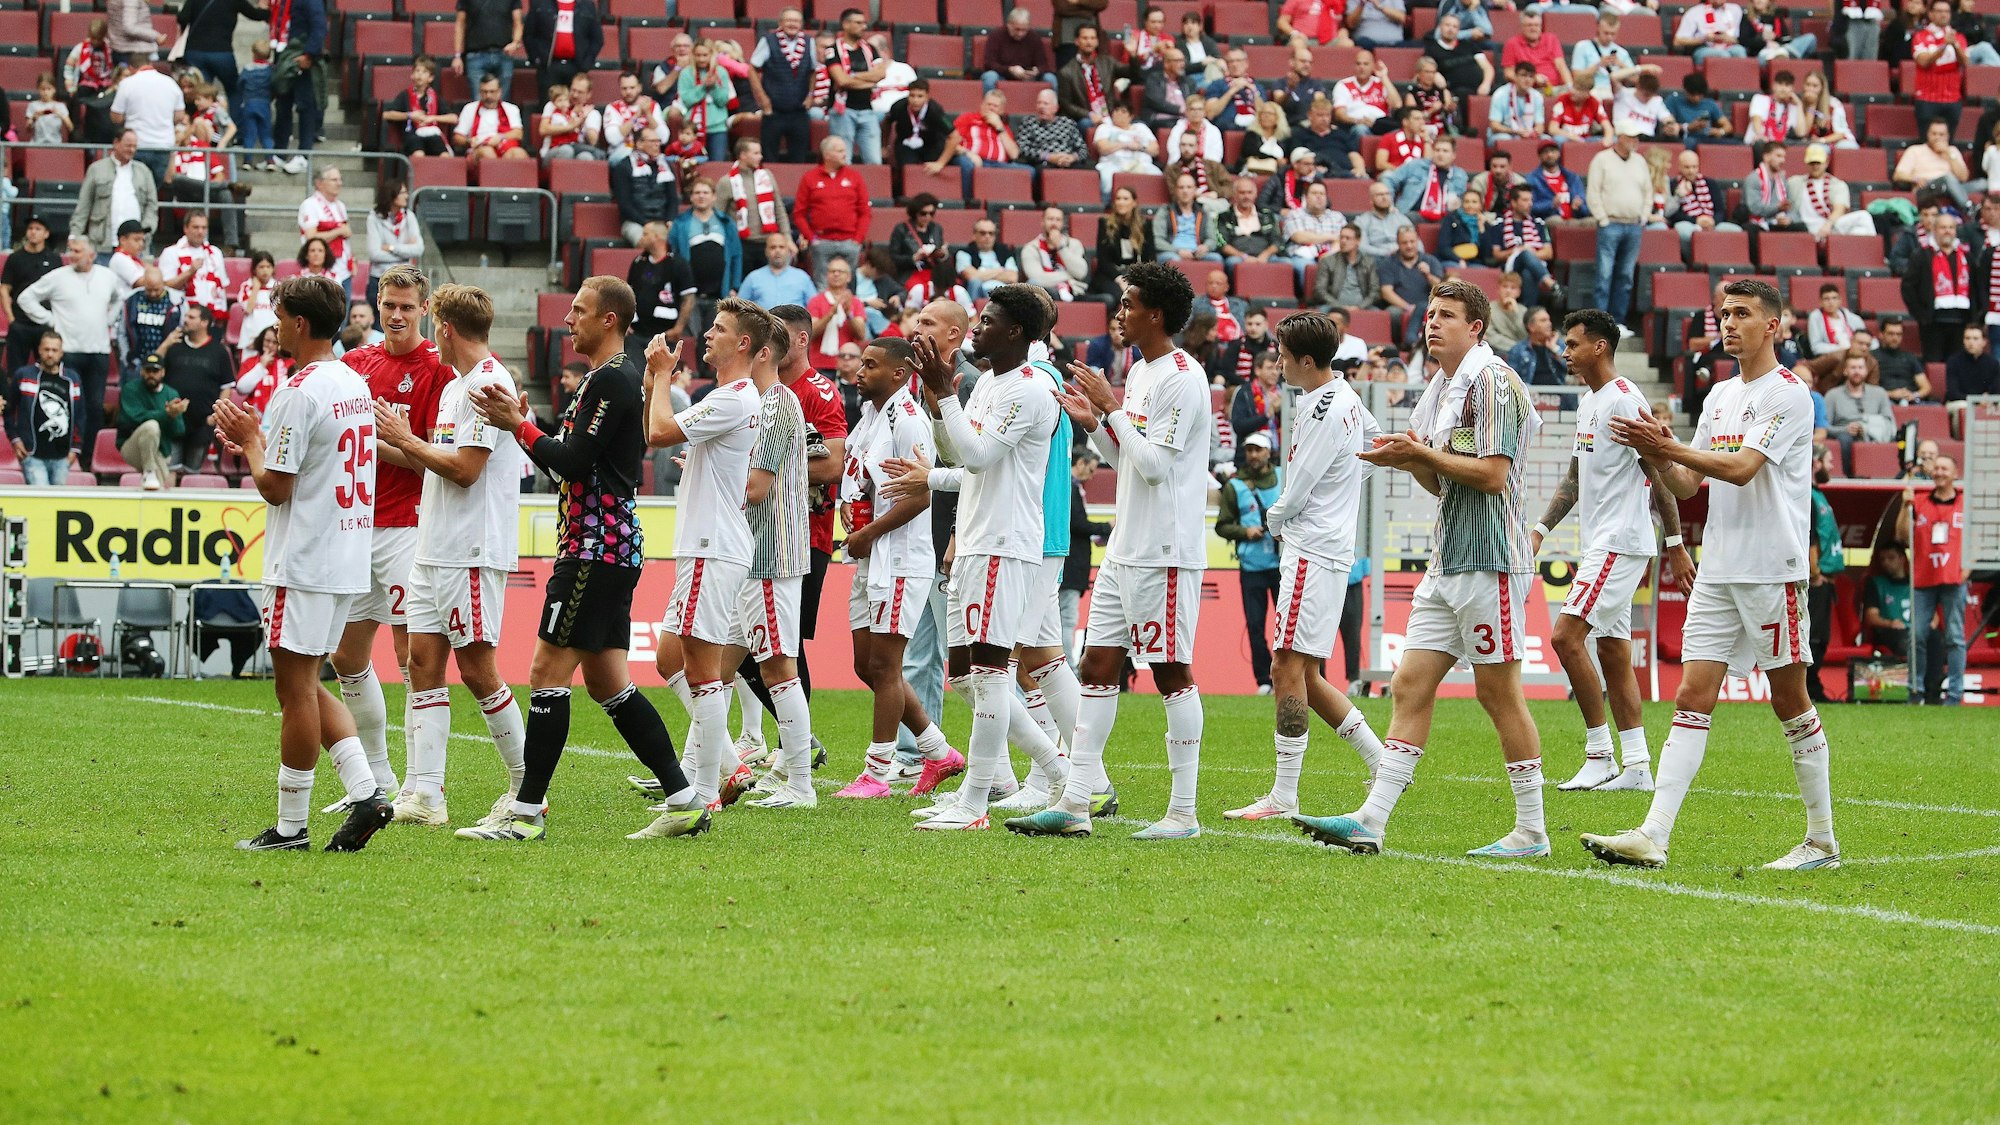 Die Mannschaft vor der Südtribüne nach dem Spiel (1. FC Köln).








